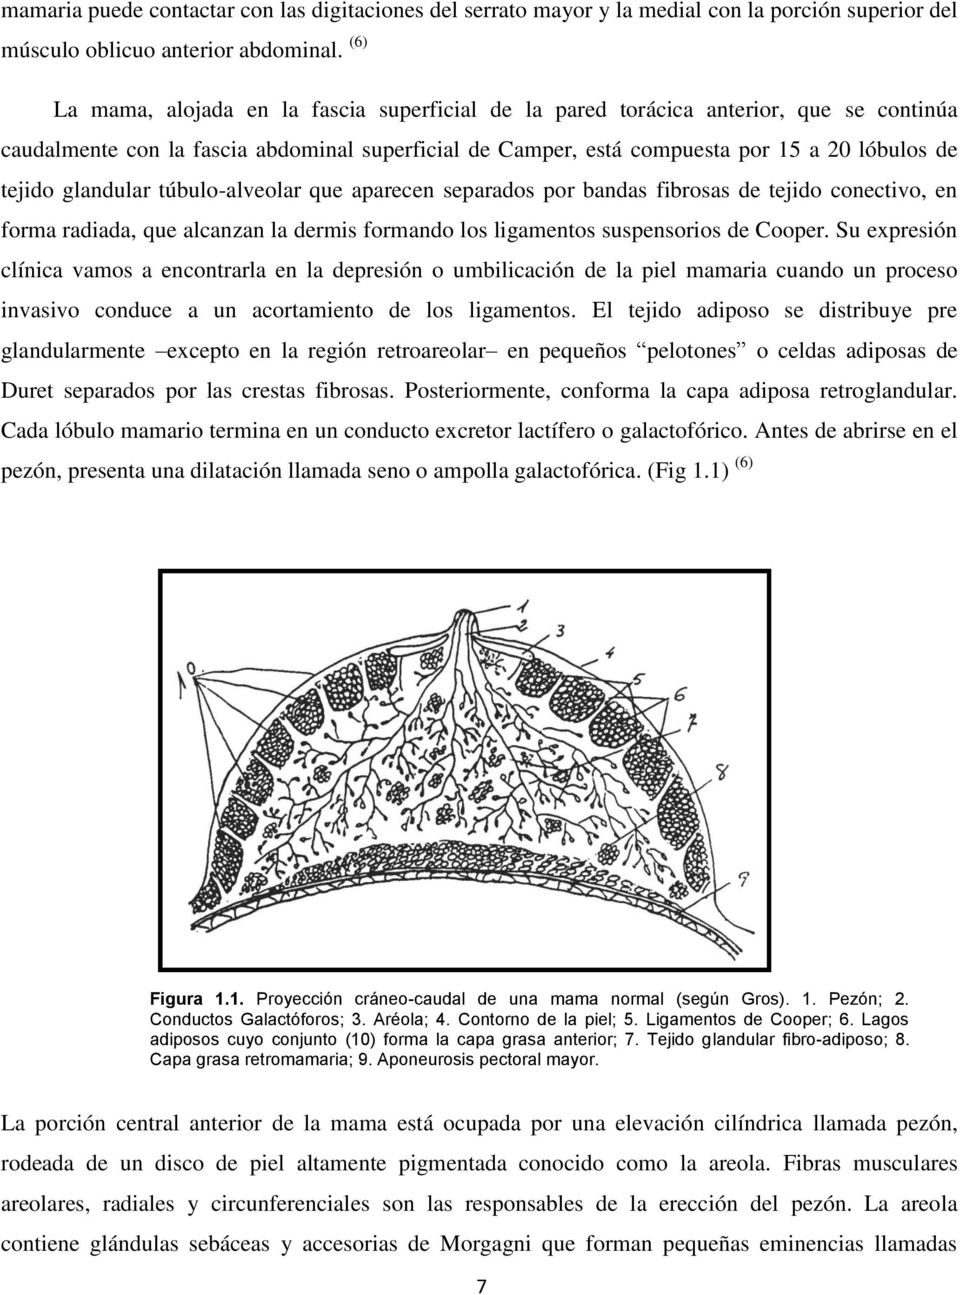 glandular túbulo-alveolar que aparecen separados por bandas fibrosas de tejido conectivo, en forma radiada, que alcanzan la dermis formando los ligamentos suspensorios de Cooper.